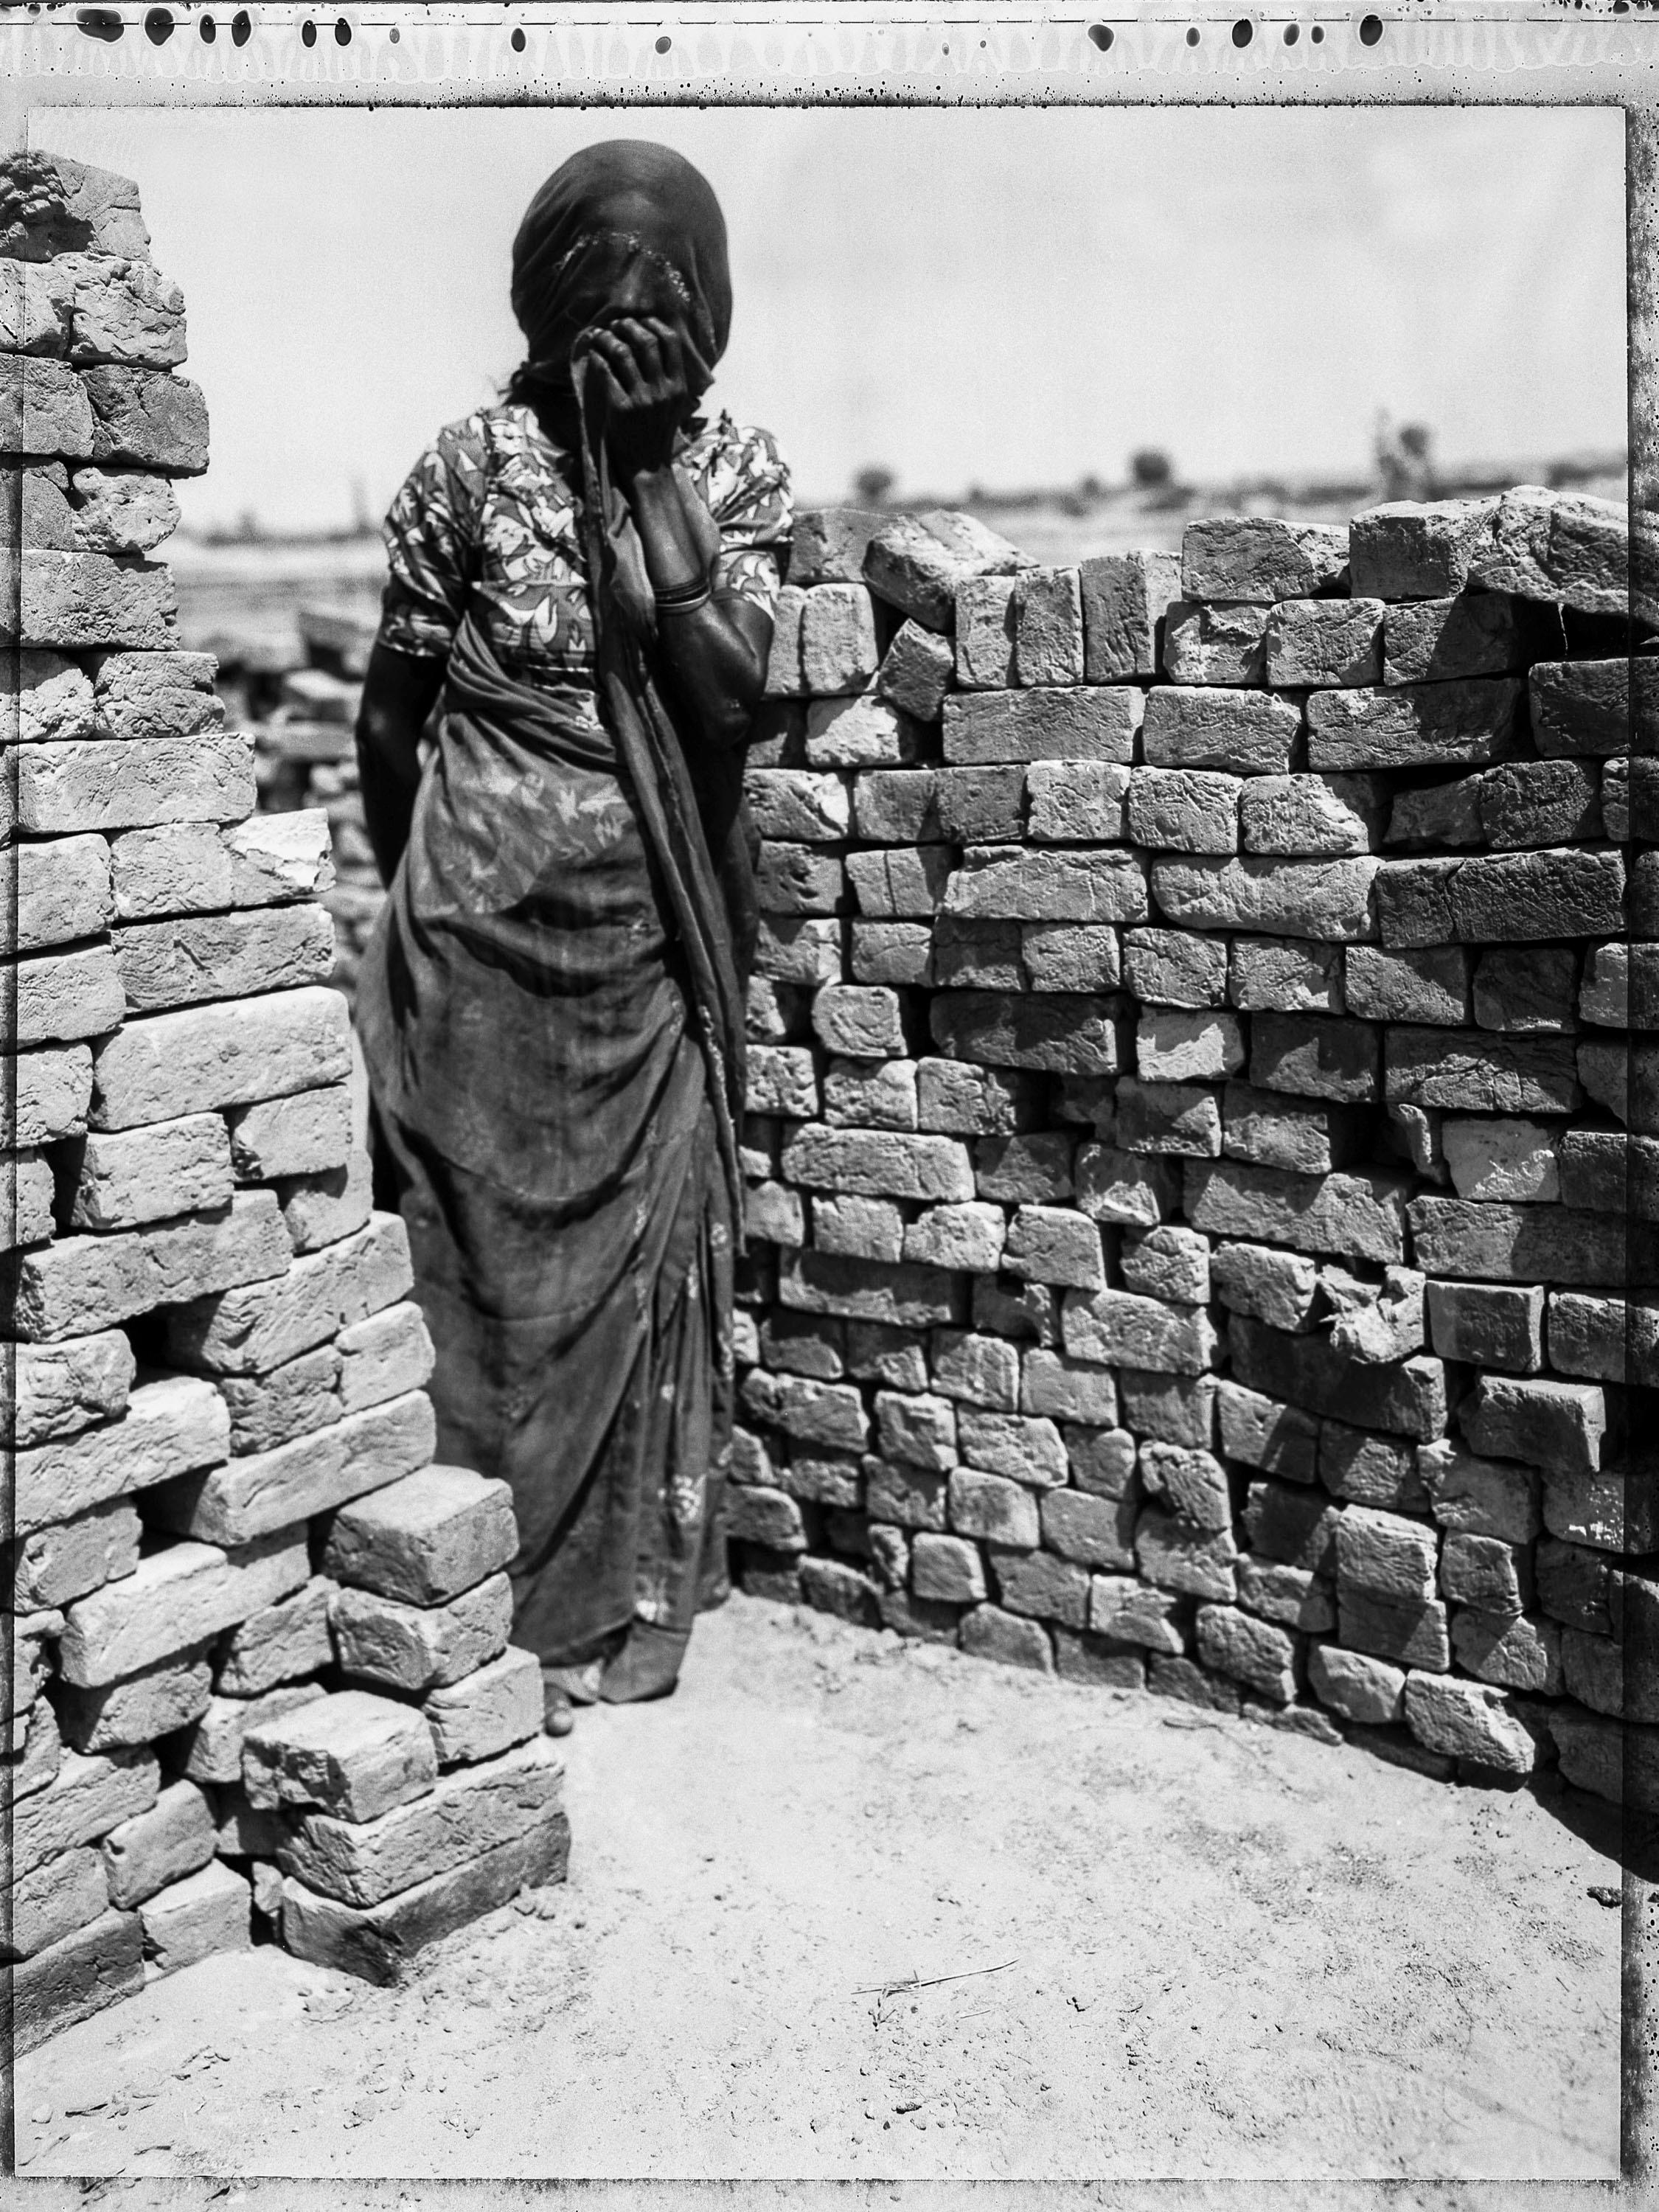 Femme indienne dans une usine de briques - Rajastan - Inde (d'après  Série de Stills indiens